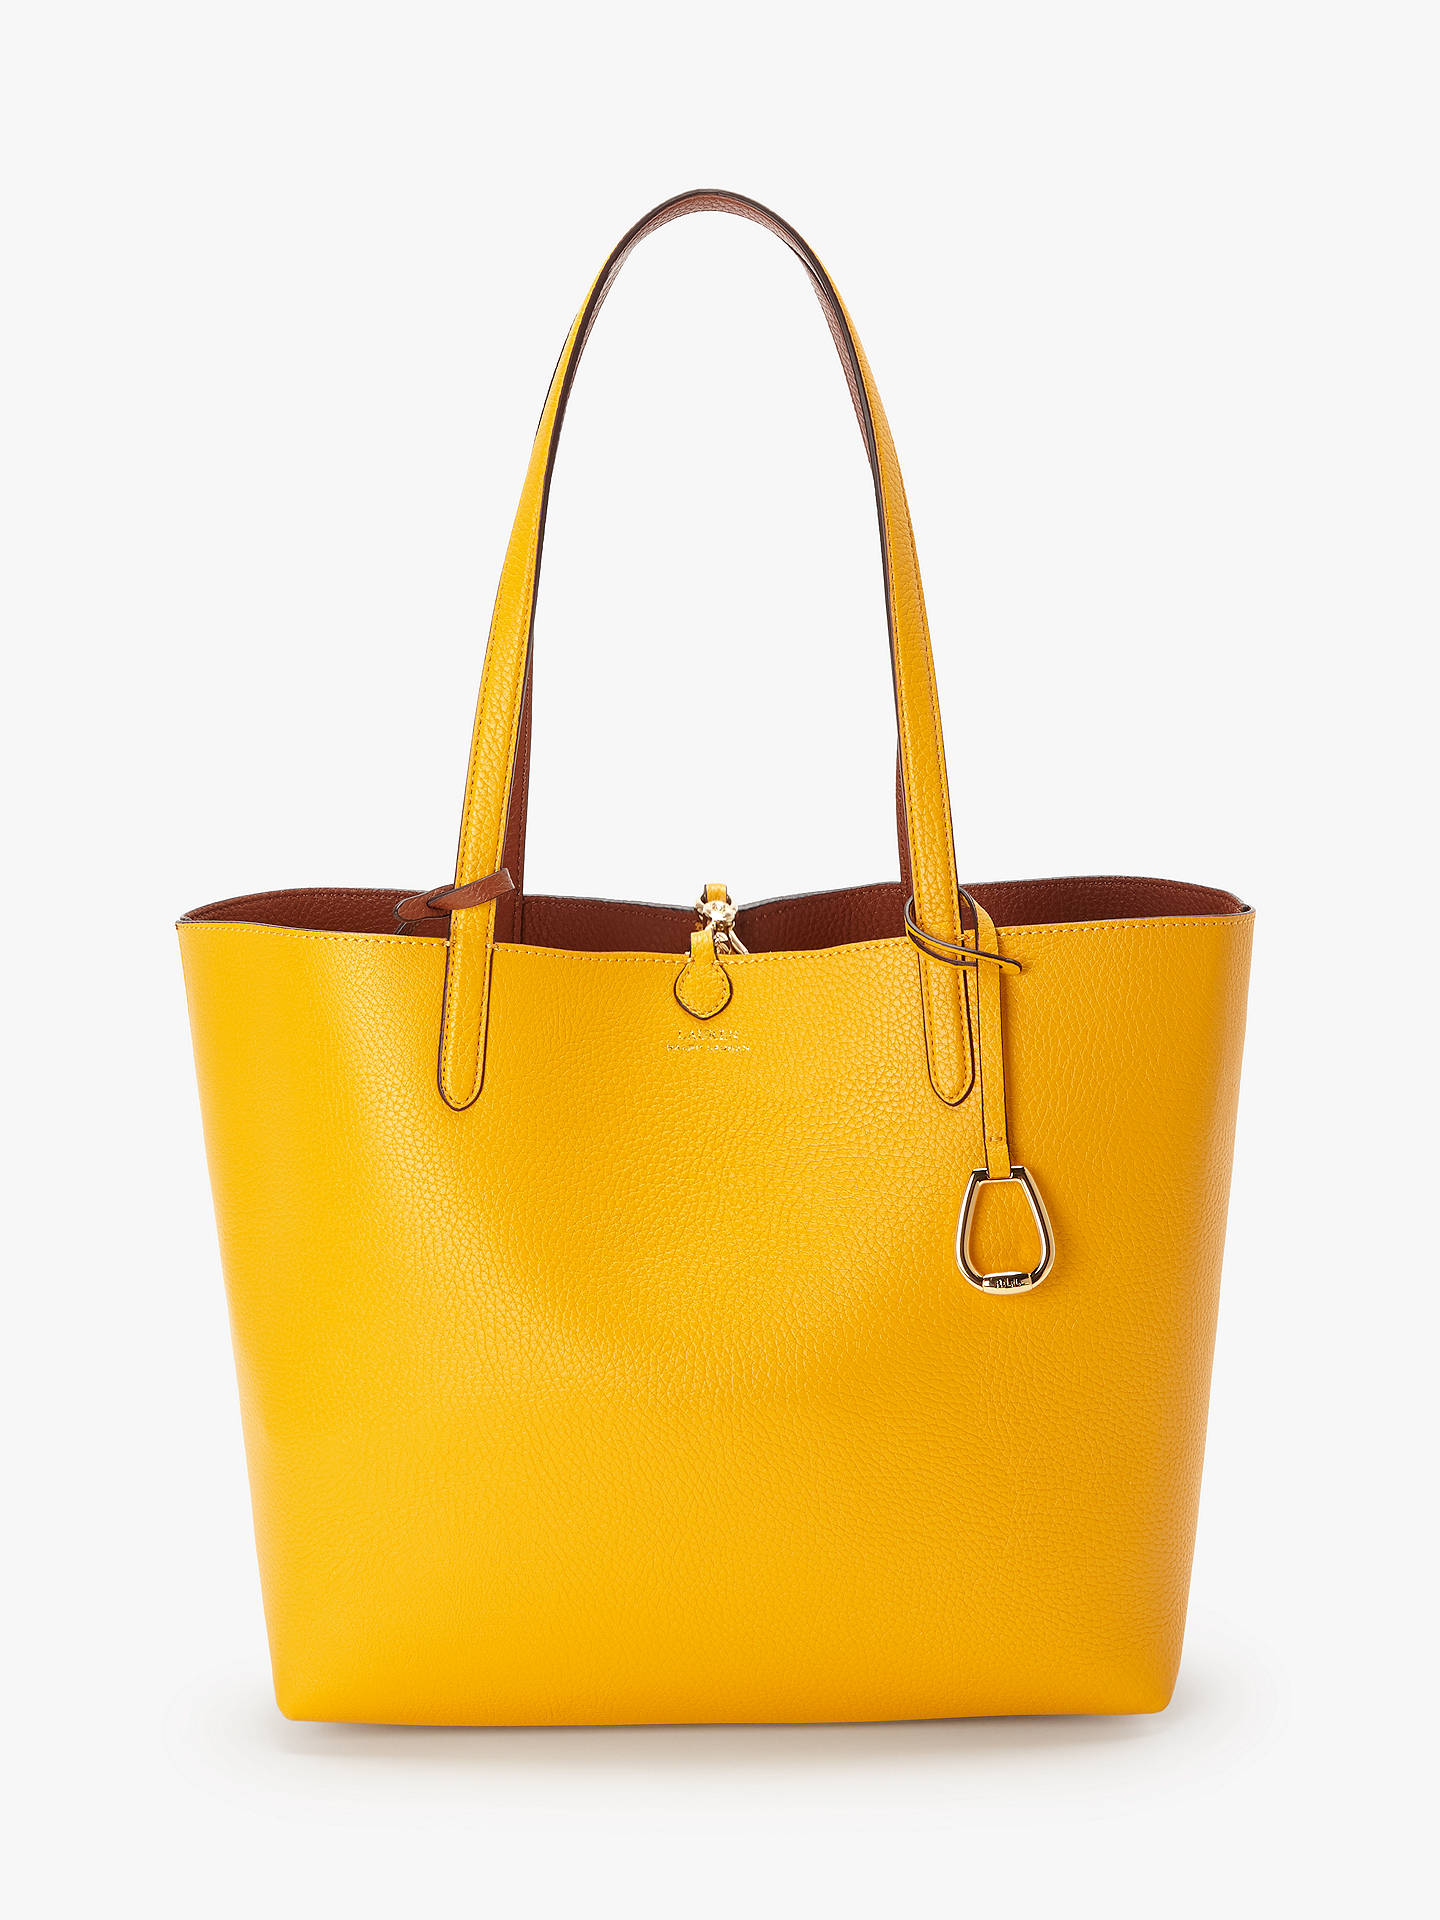 Lauren Ralph Lauren Reversible Medium Tote Bag, Sunflower/Tan at John ...